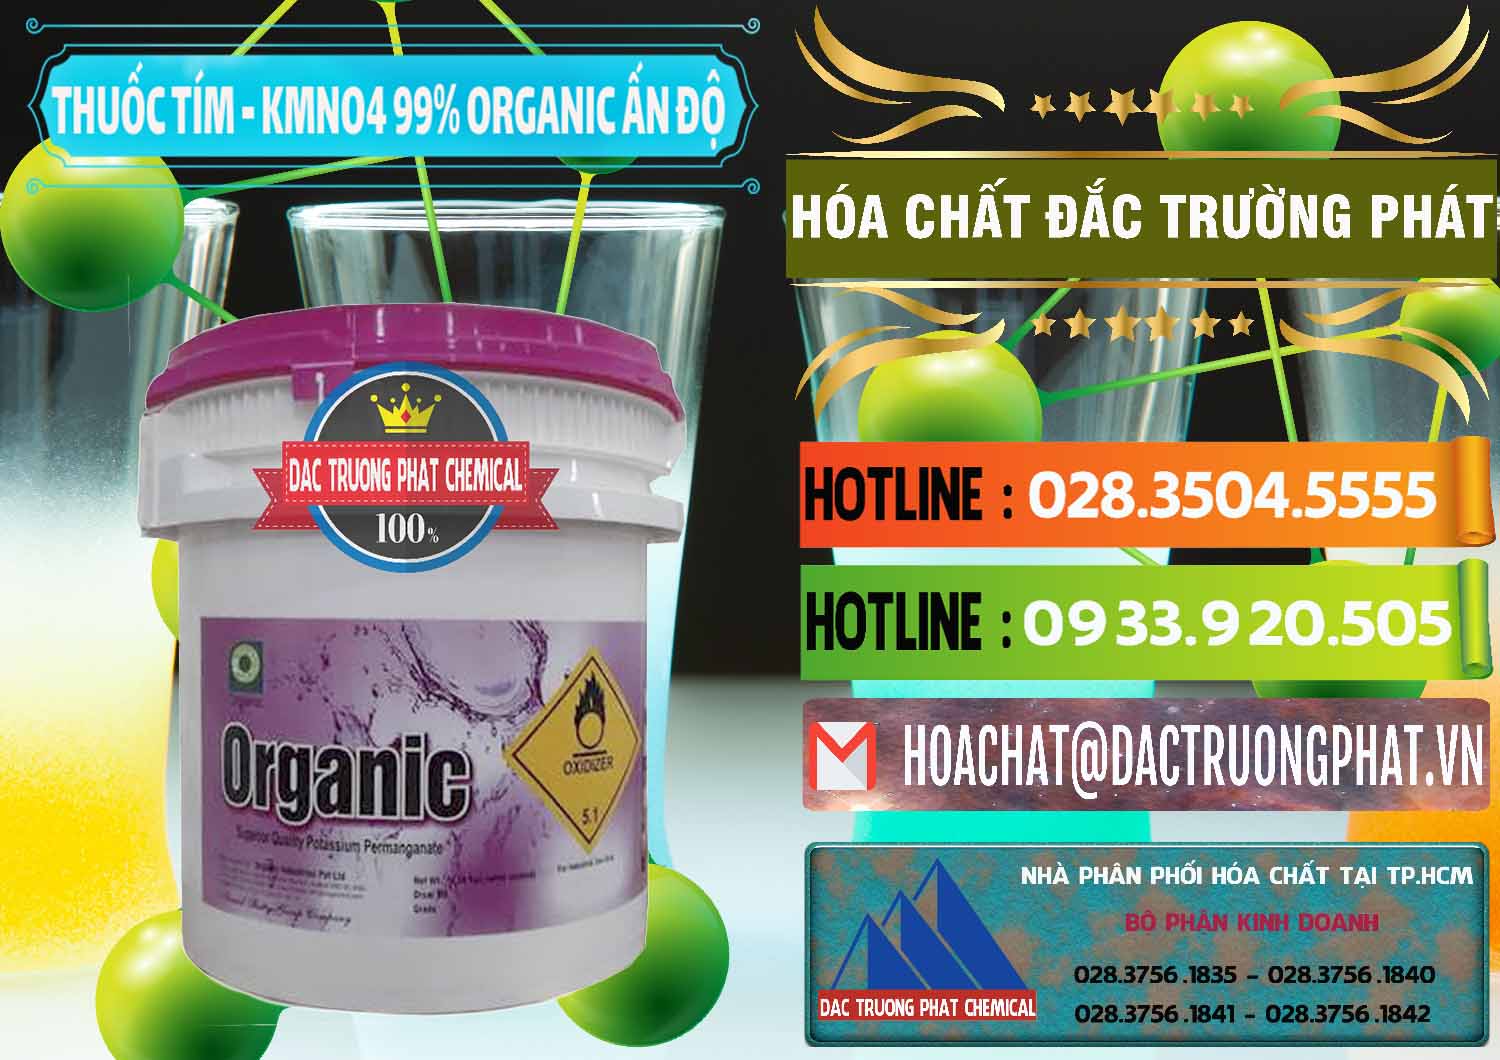 Chuyên bán ( cung cấp ) Thuốc Tím - KMNO4 99% Organic Ấn Độ India - 0216 - Công ty chuyên kinh doanh - cung cấp hóa chất tại TP.HCM - cungcaphoachat.com.vn